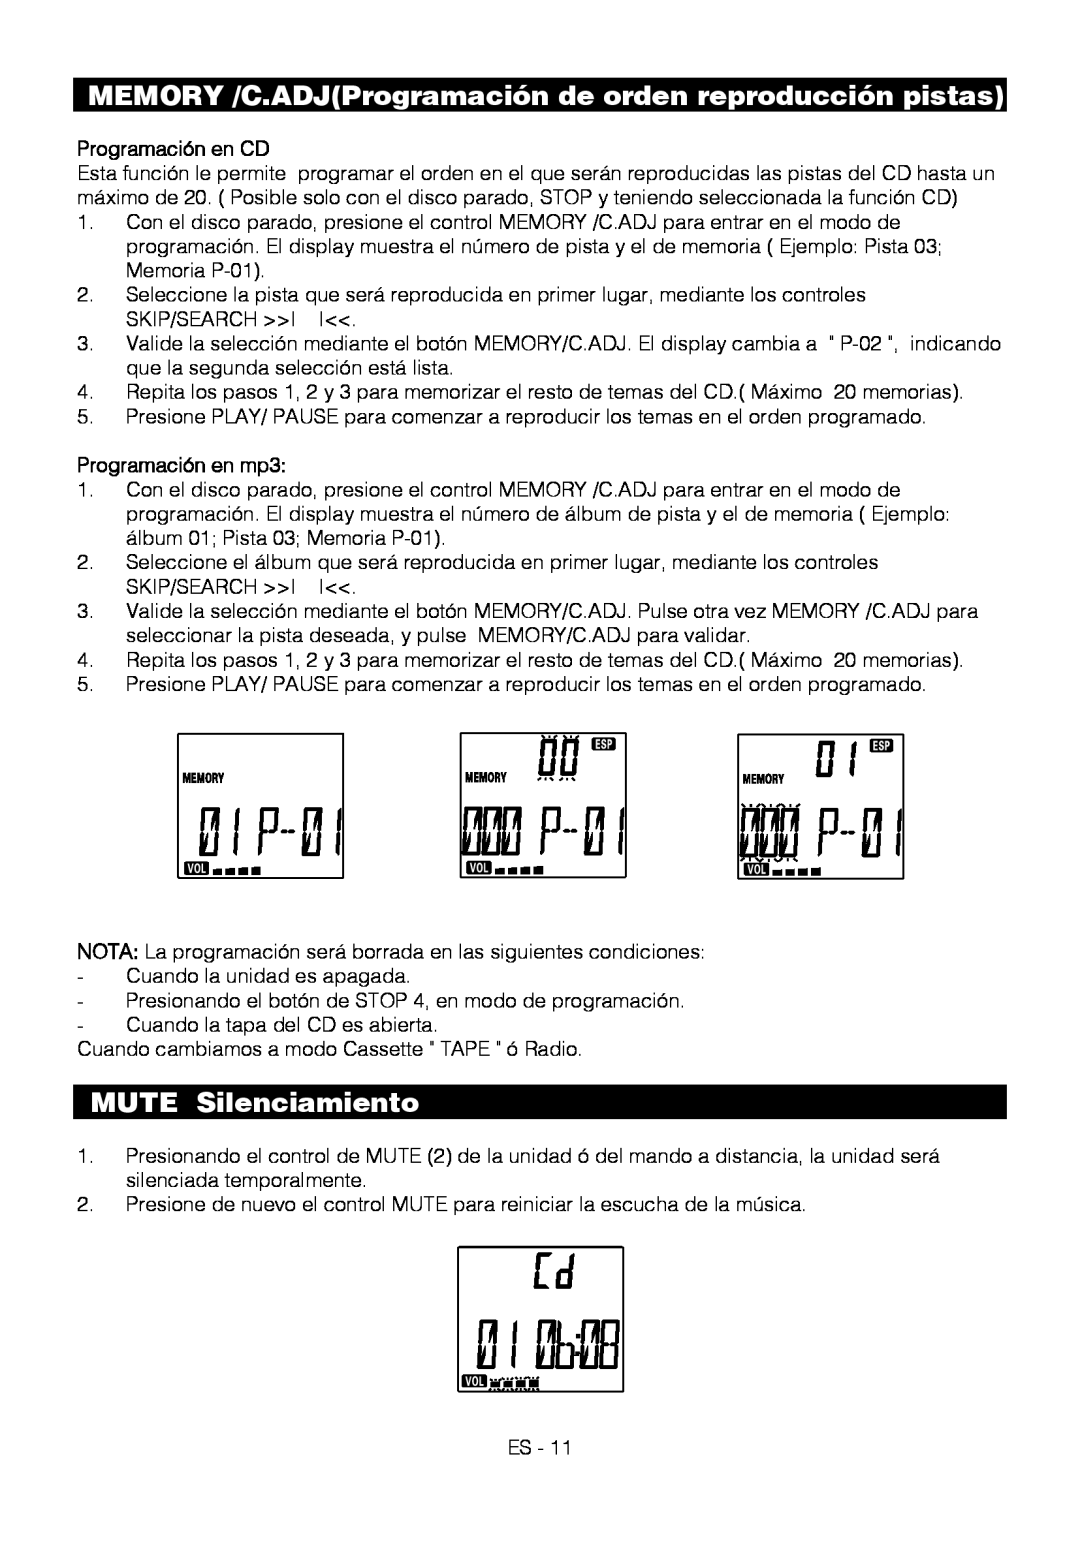 Motorola BSA-1520 instruction manual MUTE Silenciamiento, Programación en CD, Programación en mp3 